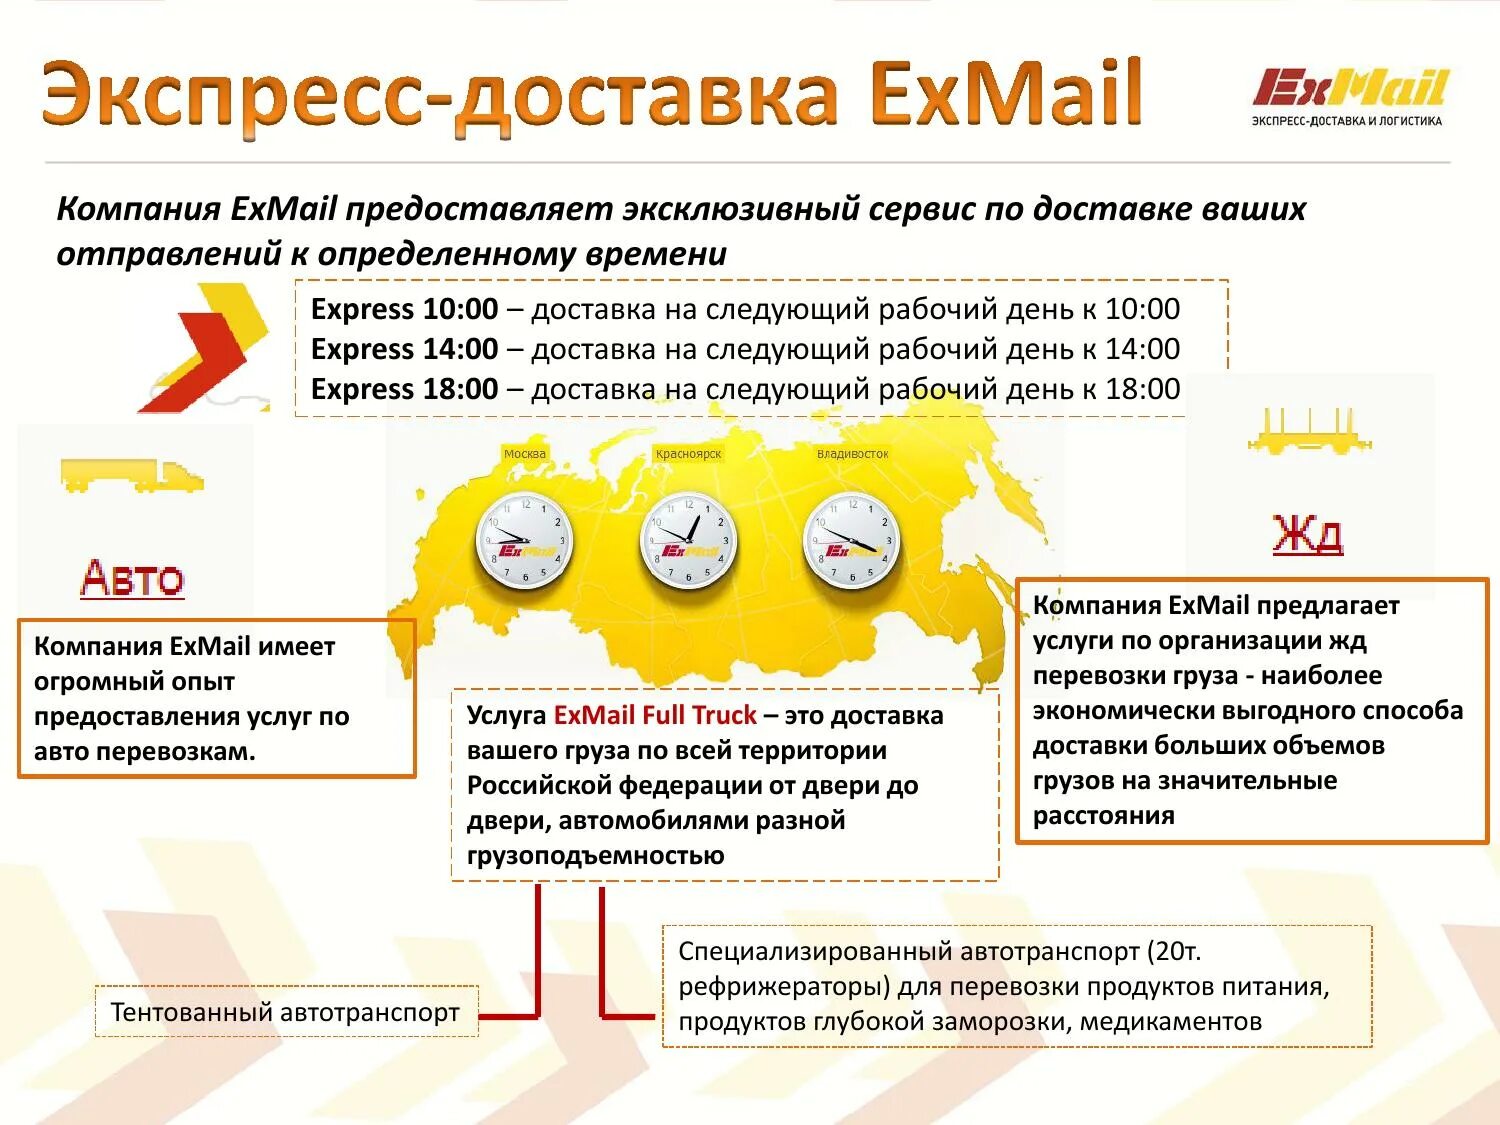 Exmail что это. Эксмейл доставка. EXMAIL доставка. Экспресс доставка ex mail. Иксмэил Курьерская служба.